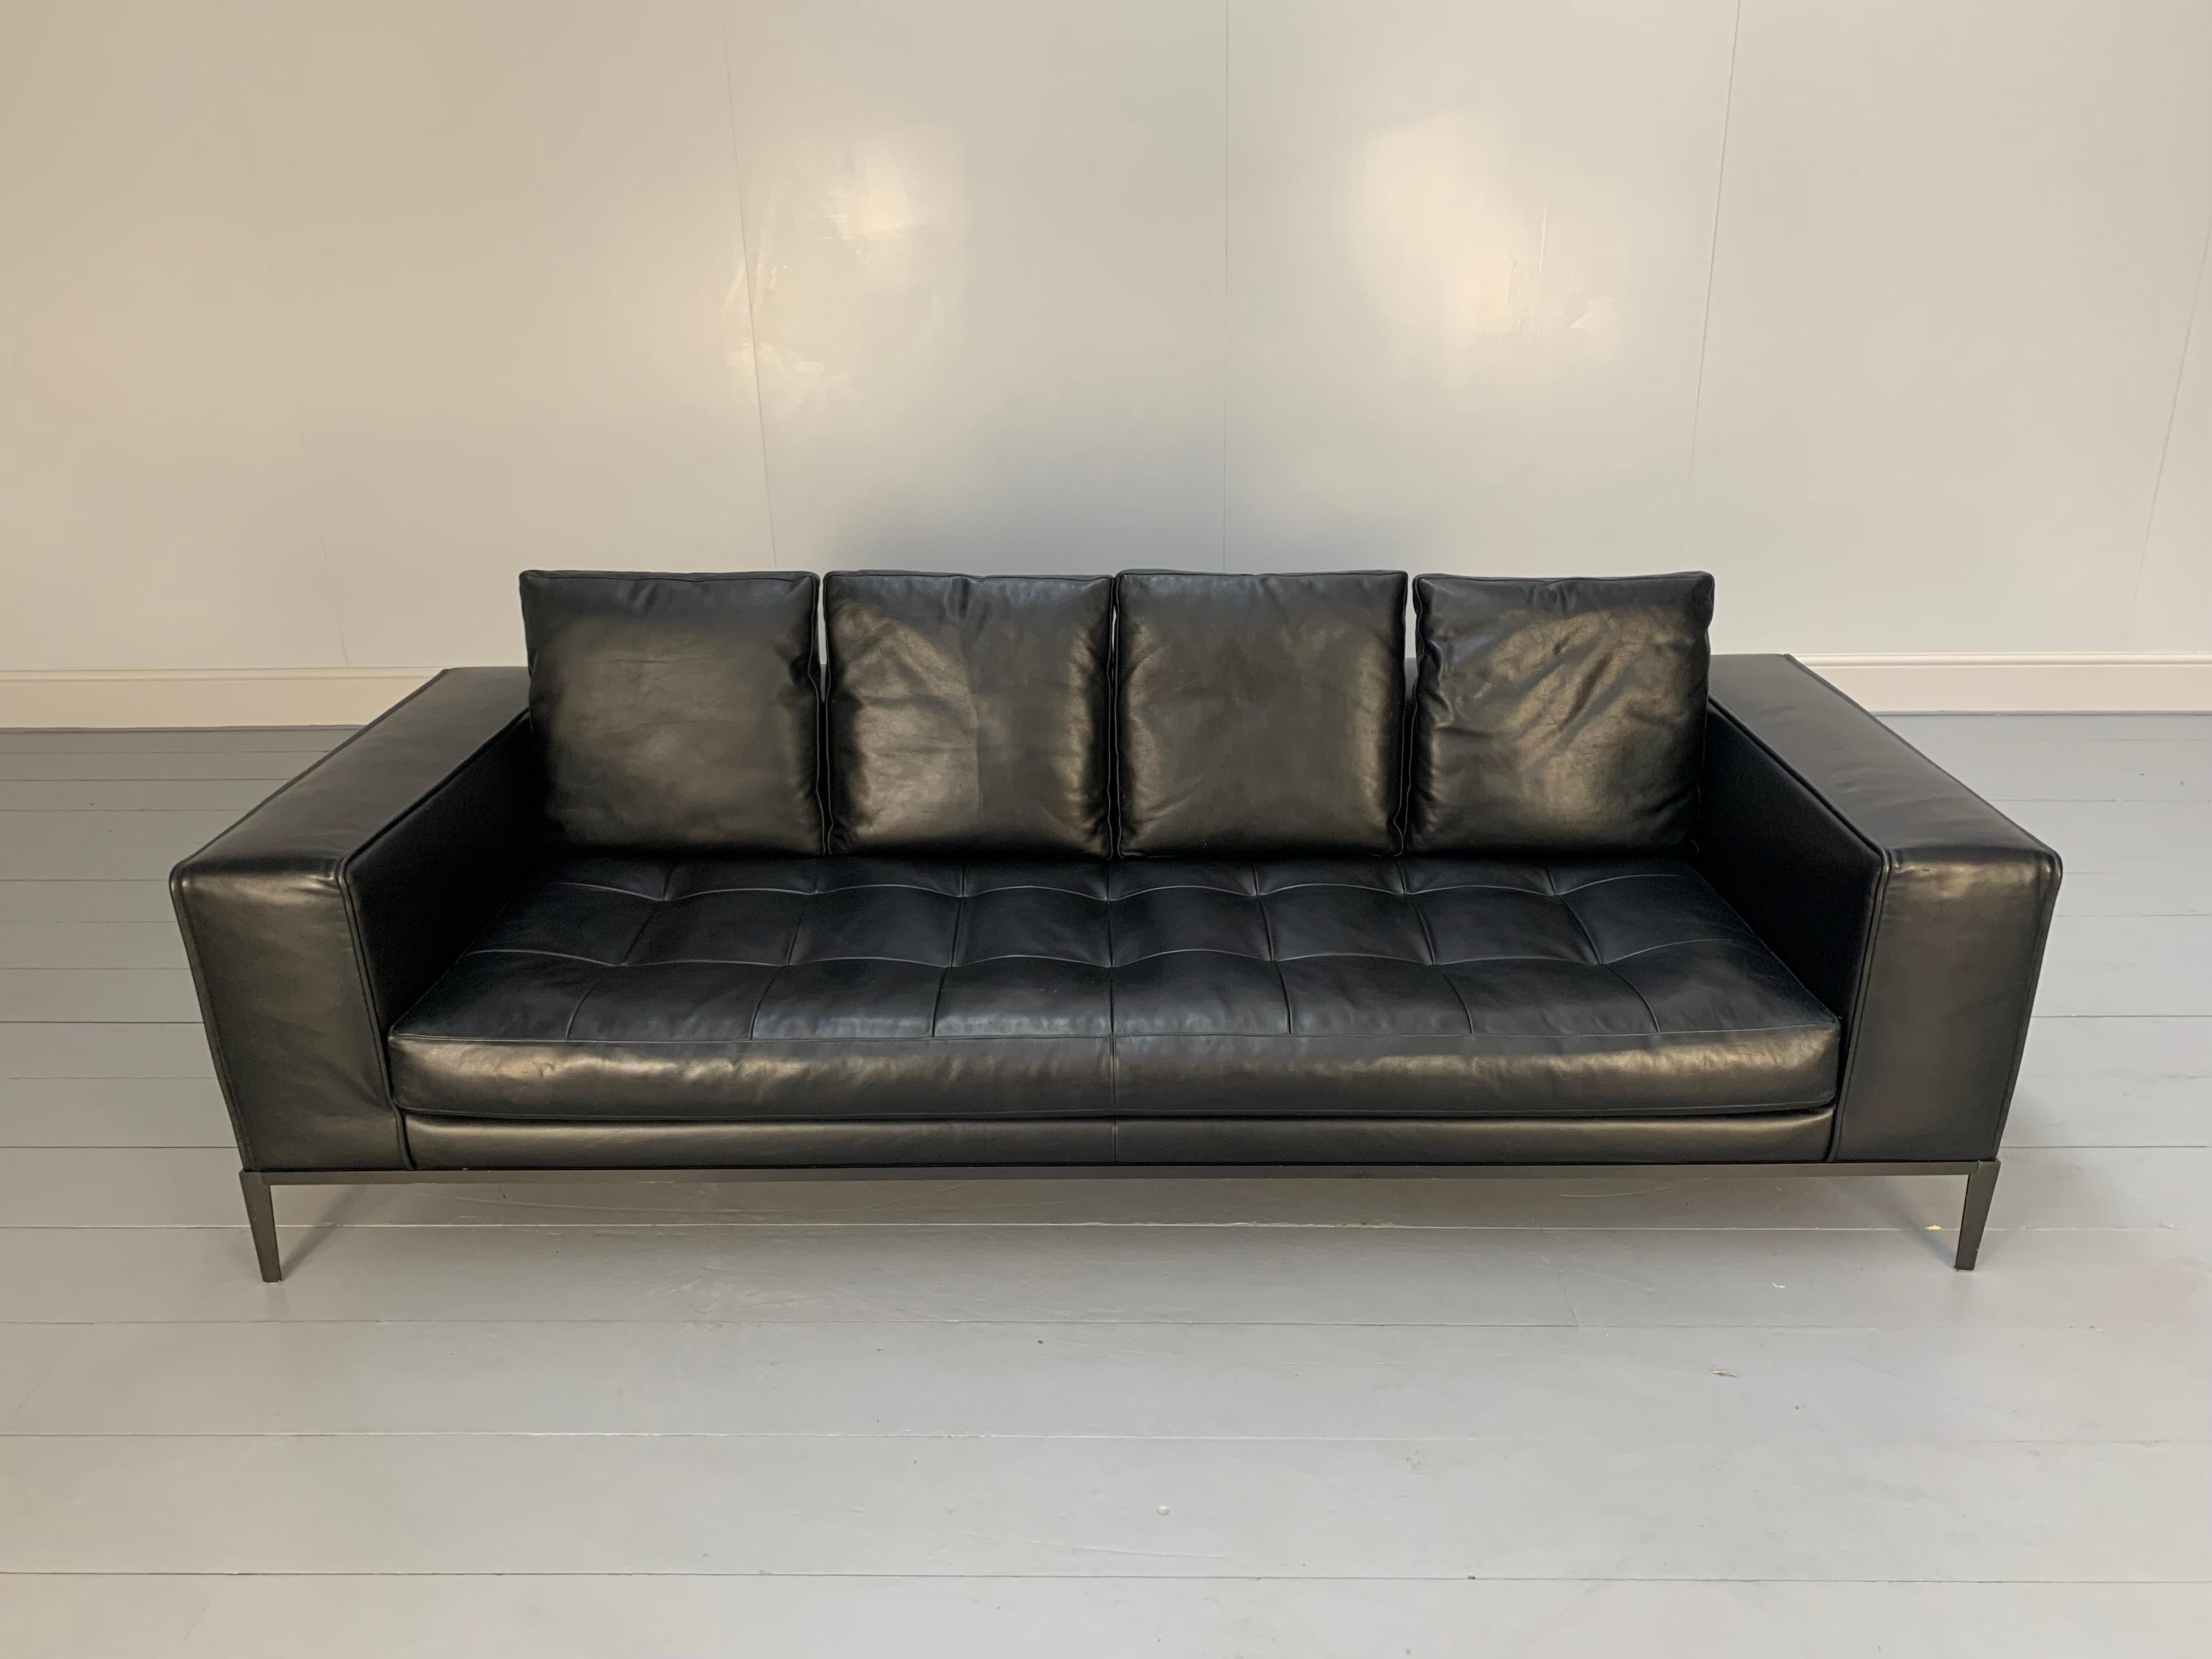 Sublime B&B Italia “Simplex ” 4-Seat Sofa in Black “Gamma” Leather 1